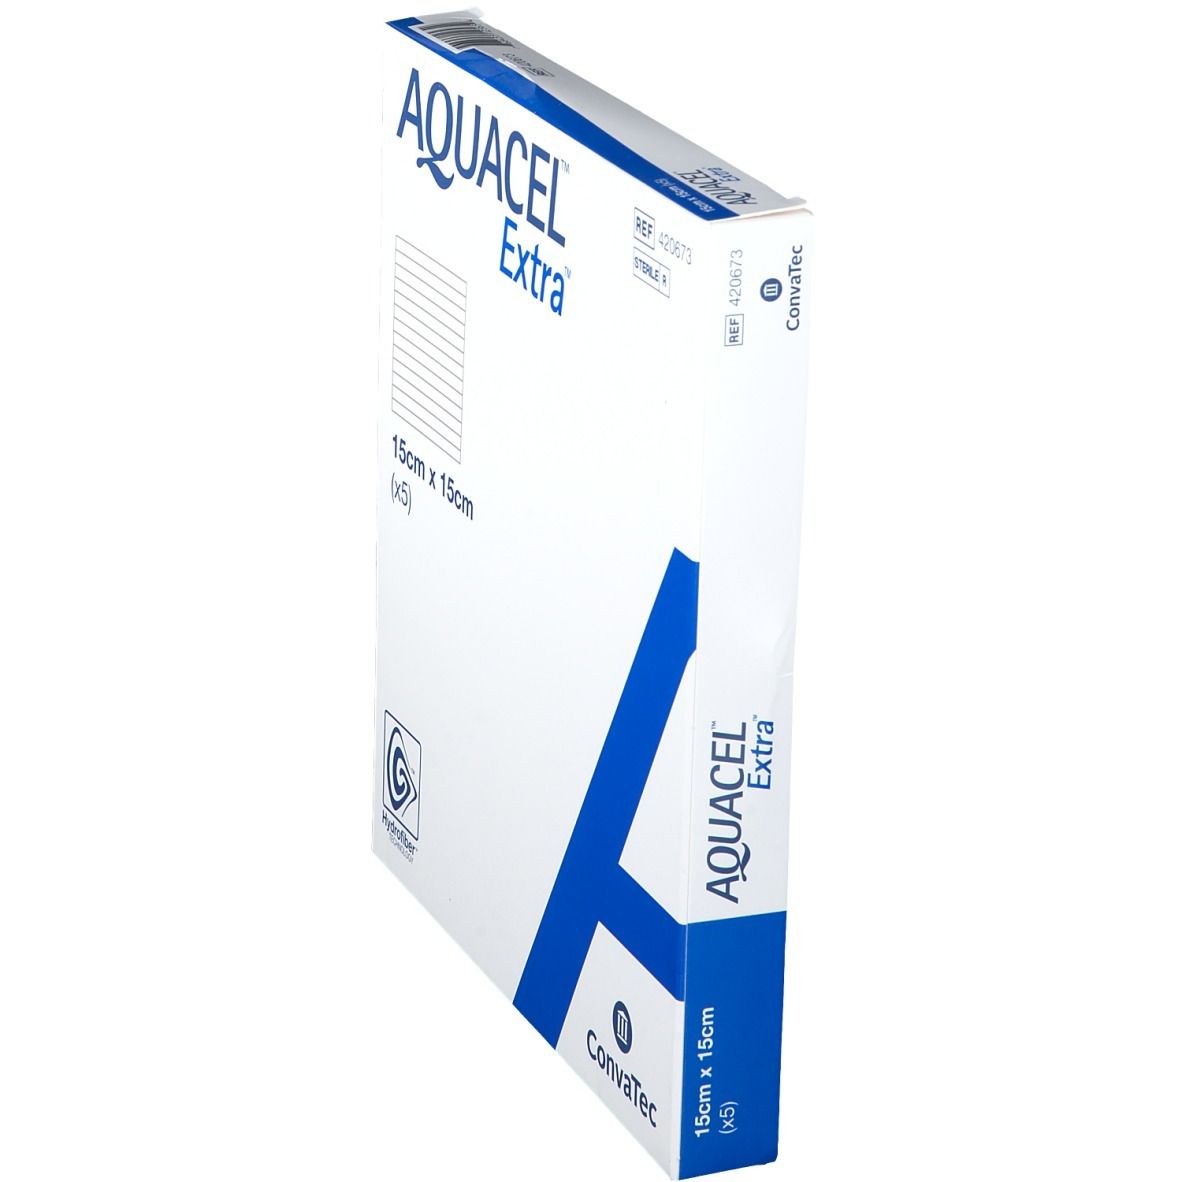 ConvaTec AQUACEL® Extra™ 15 x 15 cm